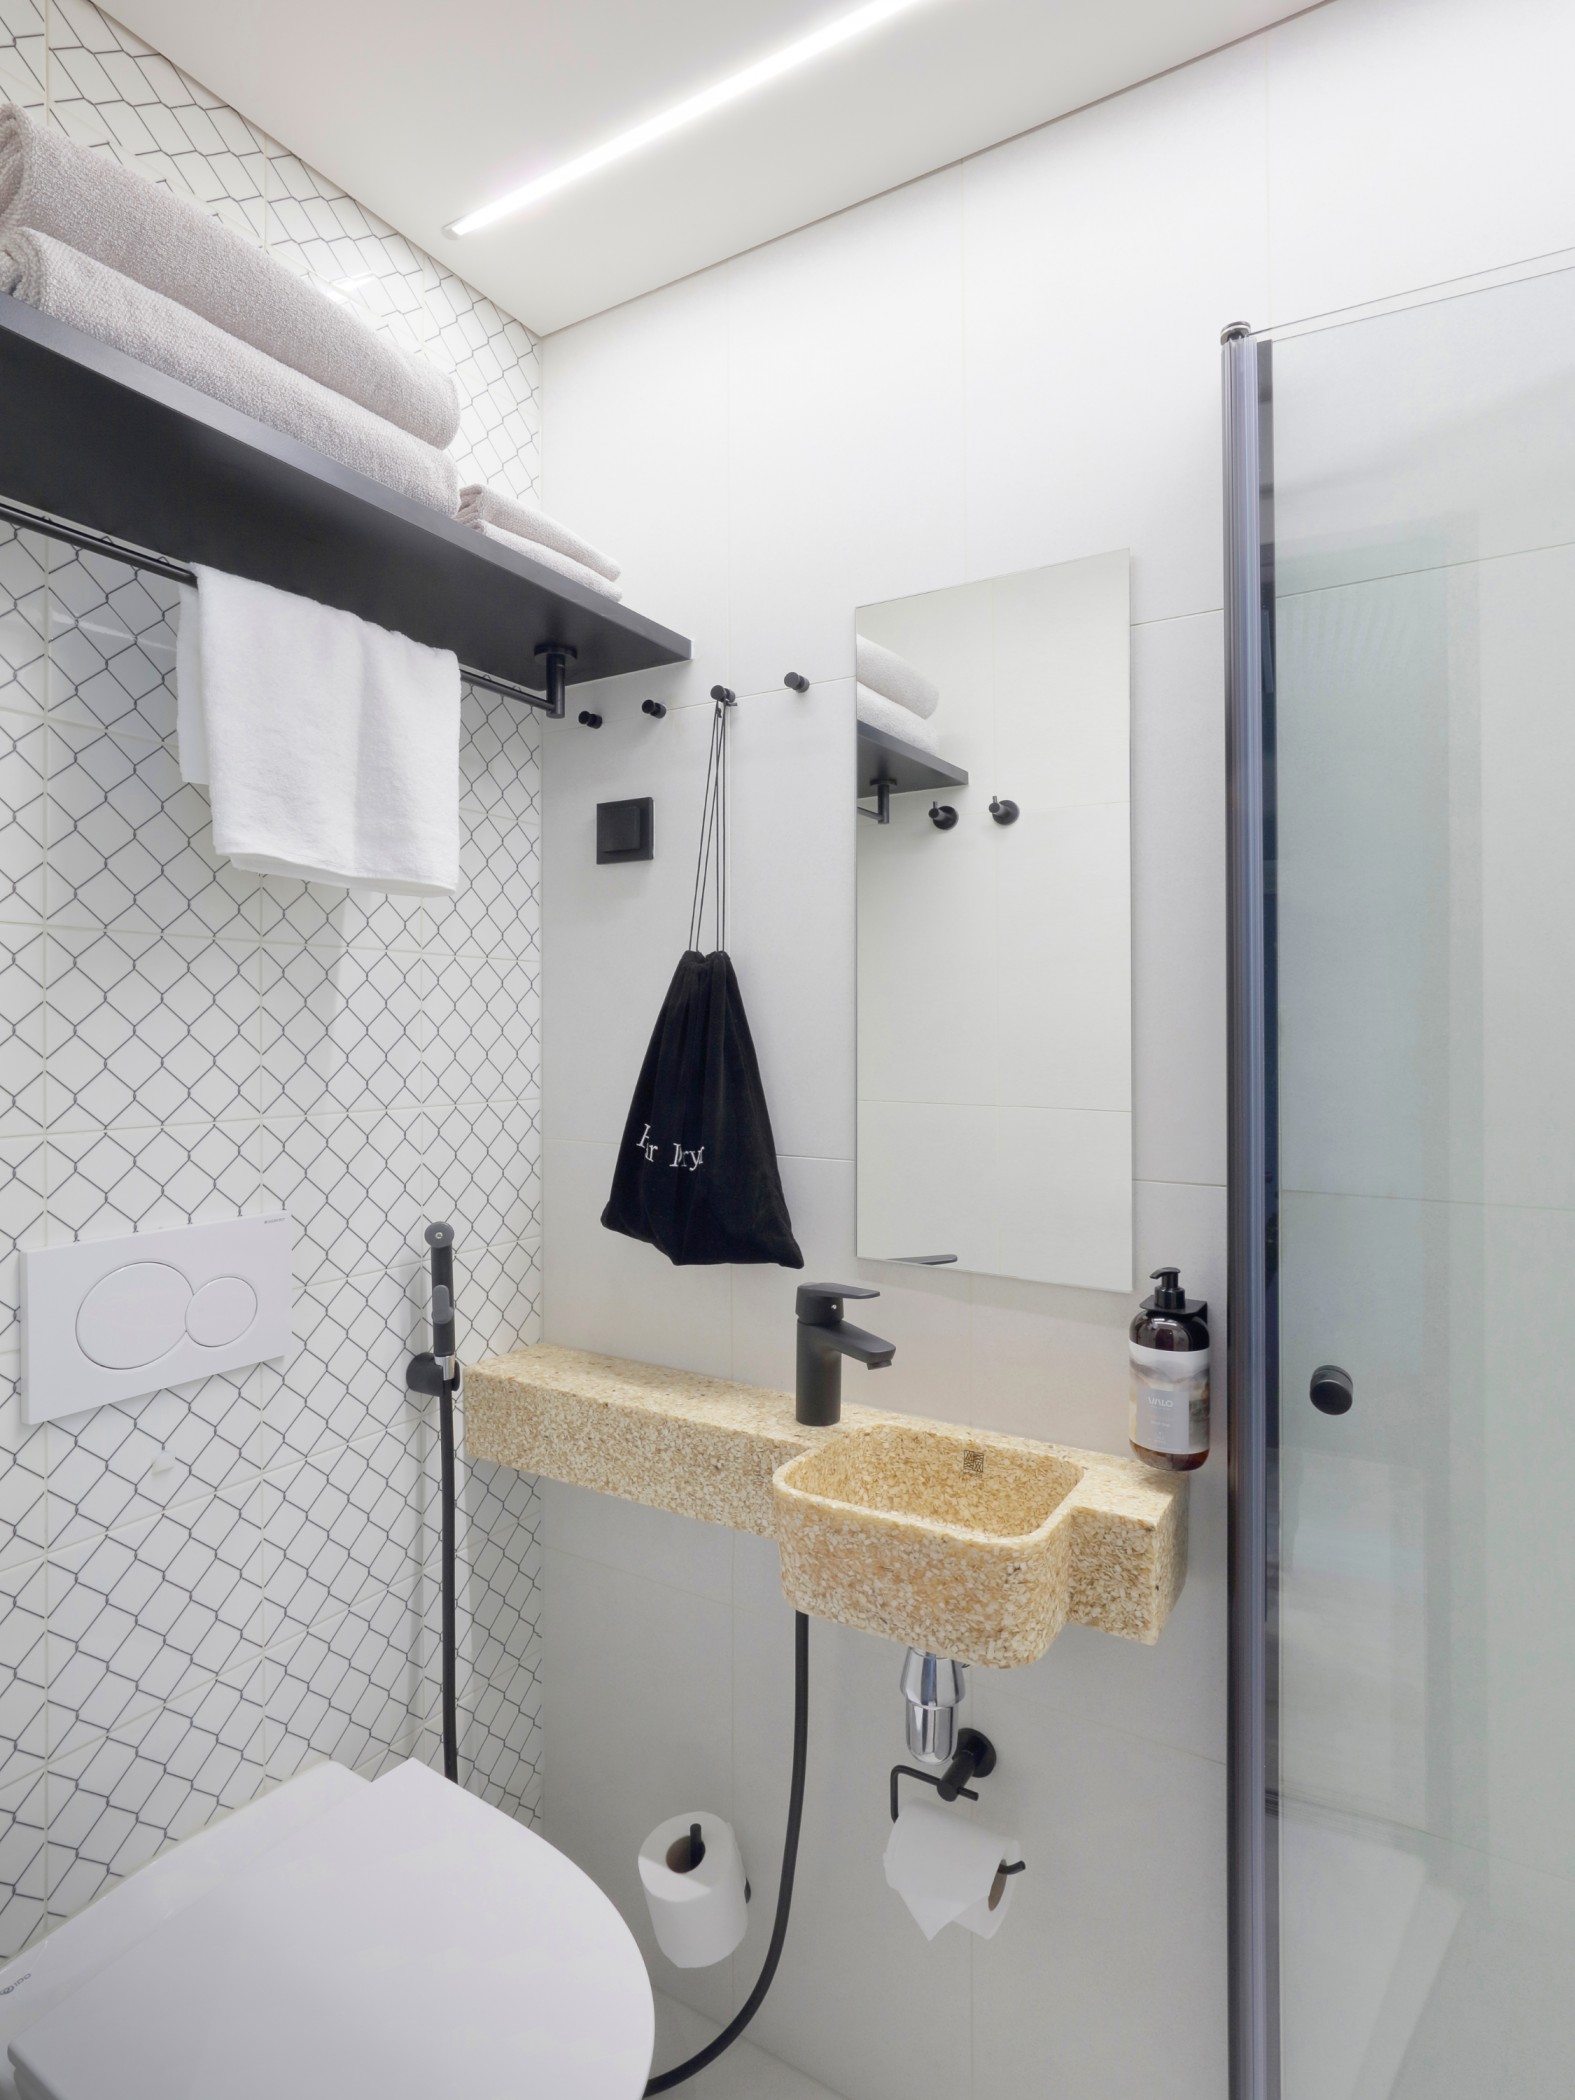 SSA rakentaa kylpyhuonemoduuleja myös hotellihankkeisiin